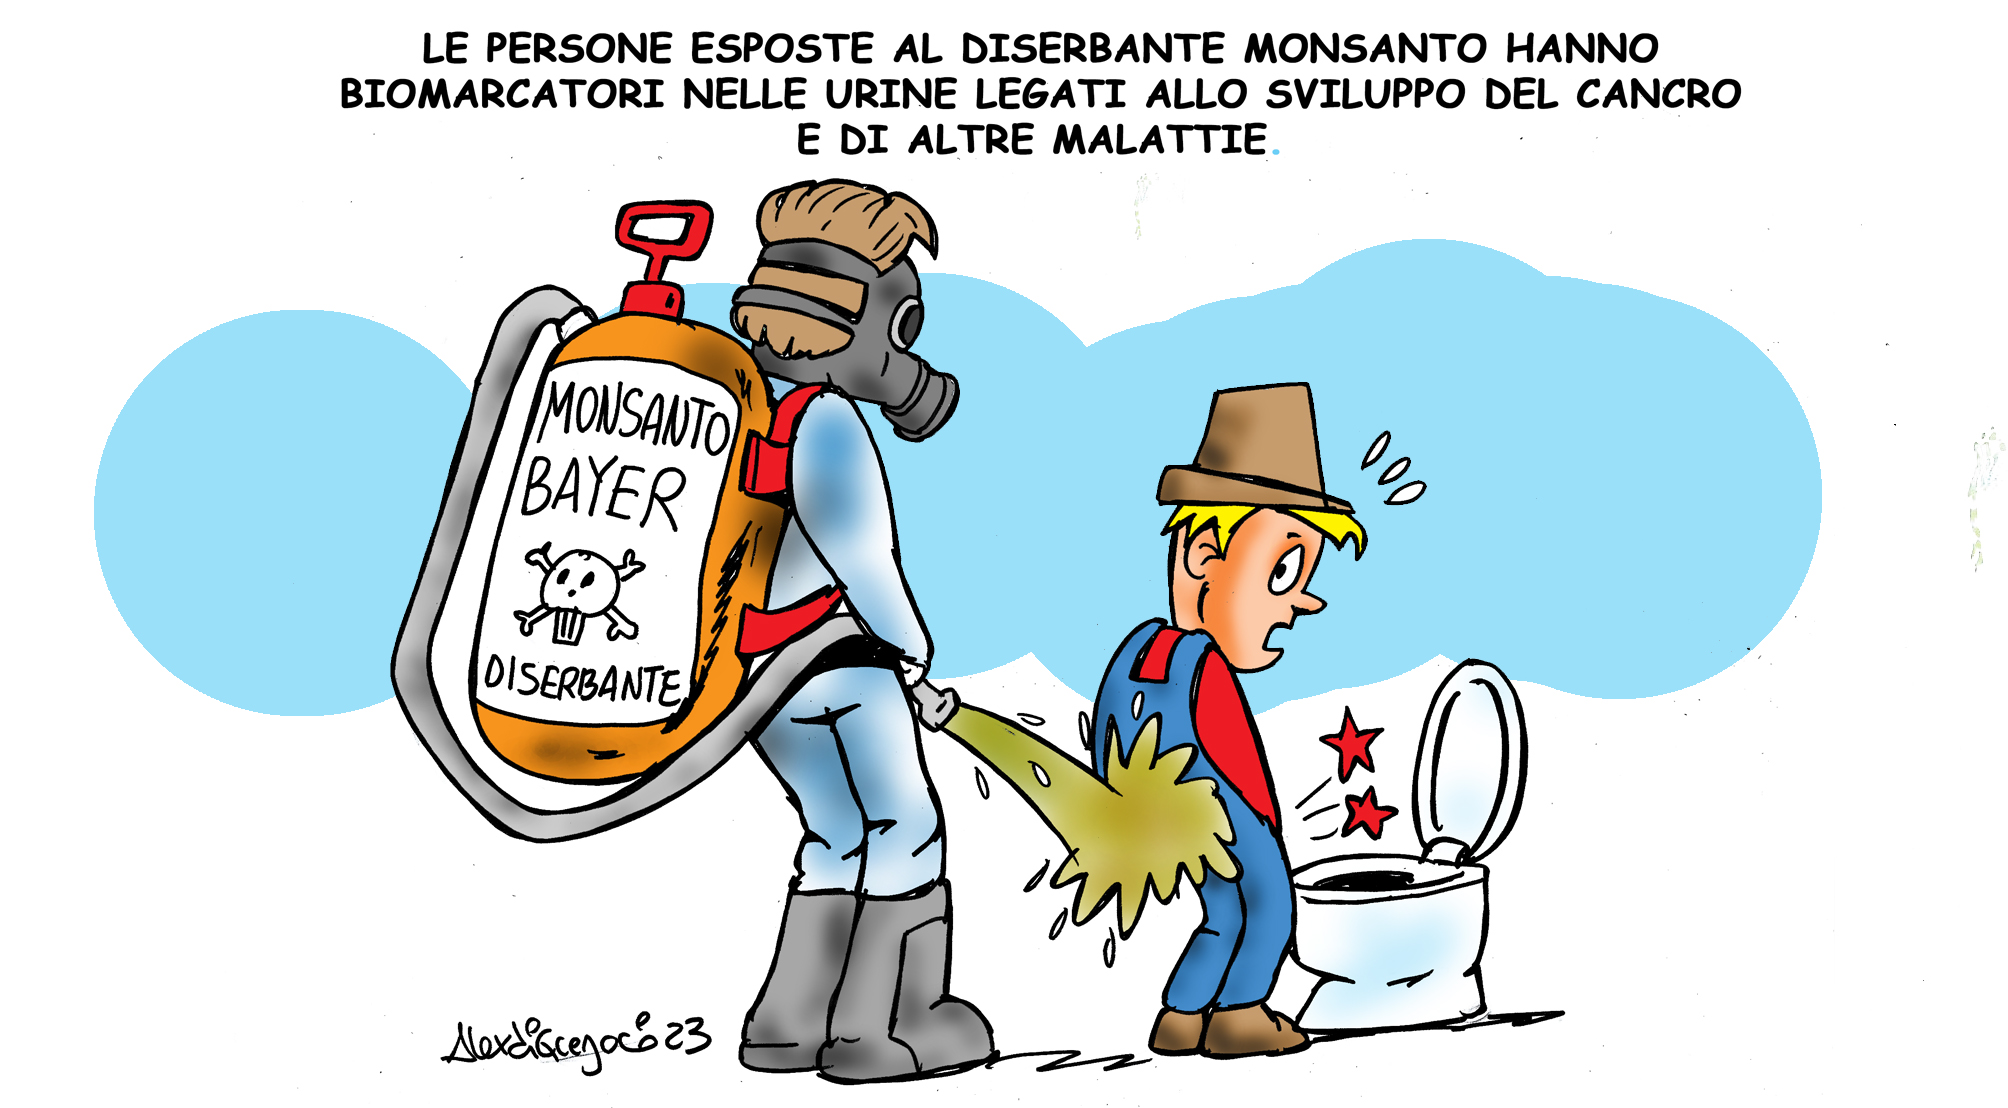 LA VIGNETTA di ALEX DI GREGORIO: “Le persone esposte al diserbante “Monsanto” hanno biomarcatori nelle urine legati allo sviluppo del cancro e di altre malattie.”